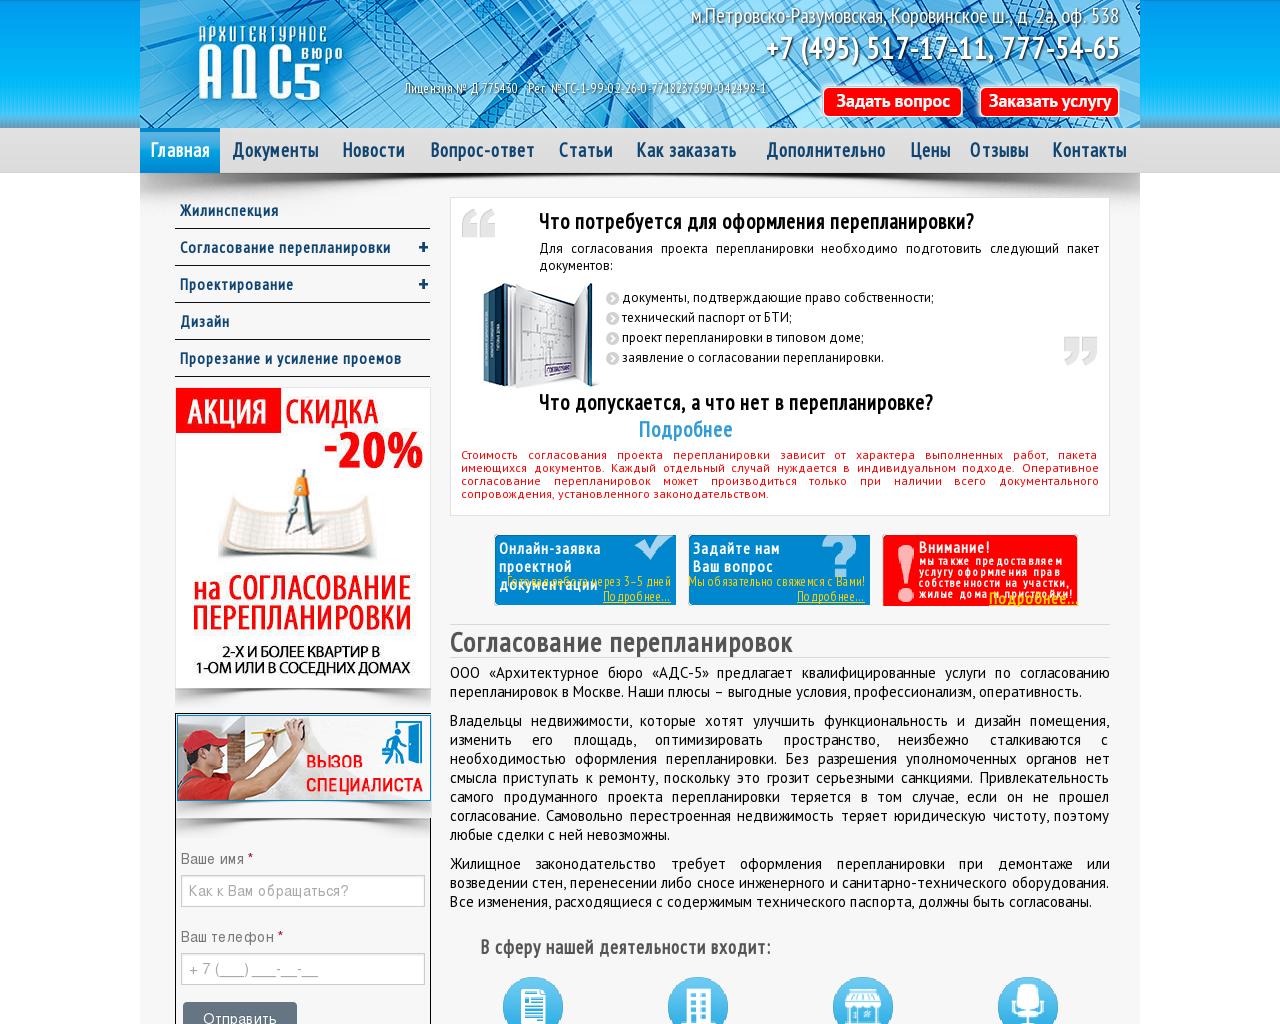 Изображение сайта ads5.ru в разрешении 1280x1024